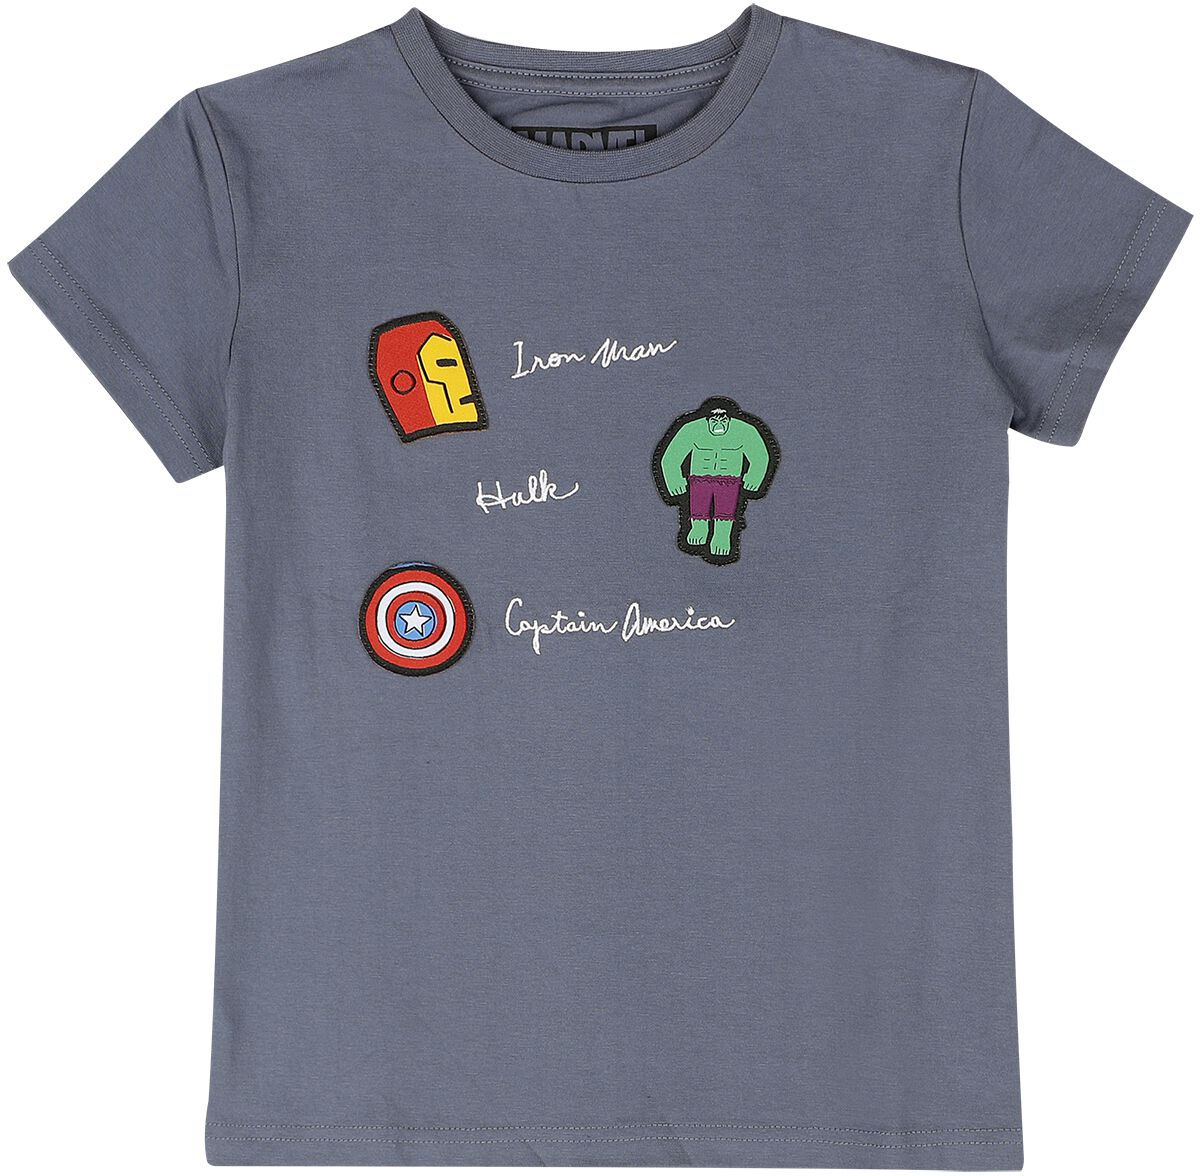 Marvel - Marvel T-Shirt für Kleinkinder - Superheroes - für Mädchen & Jungen - blaugrau  - EMP exklusives Merchandise!